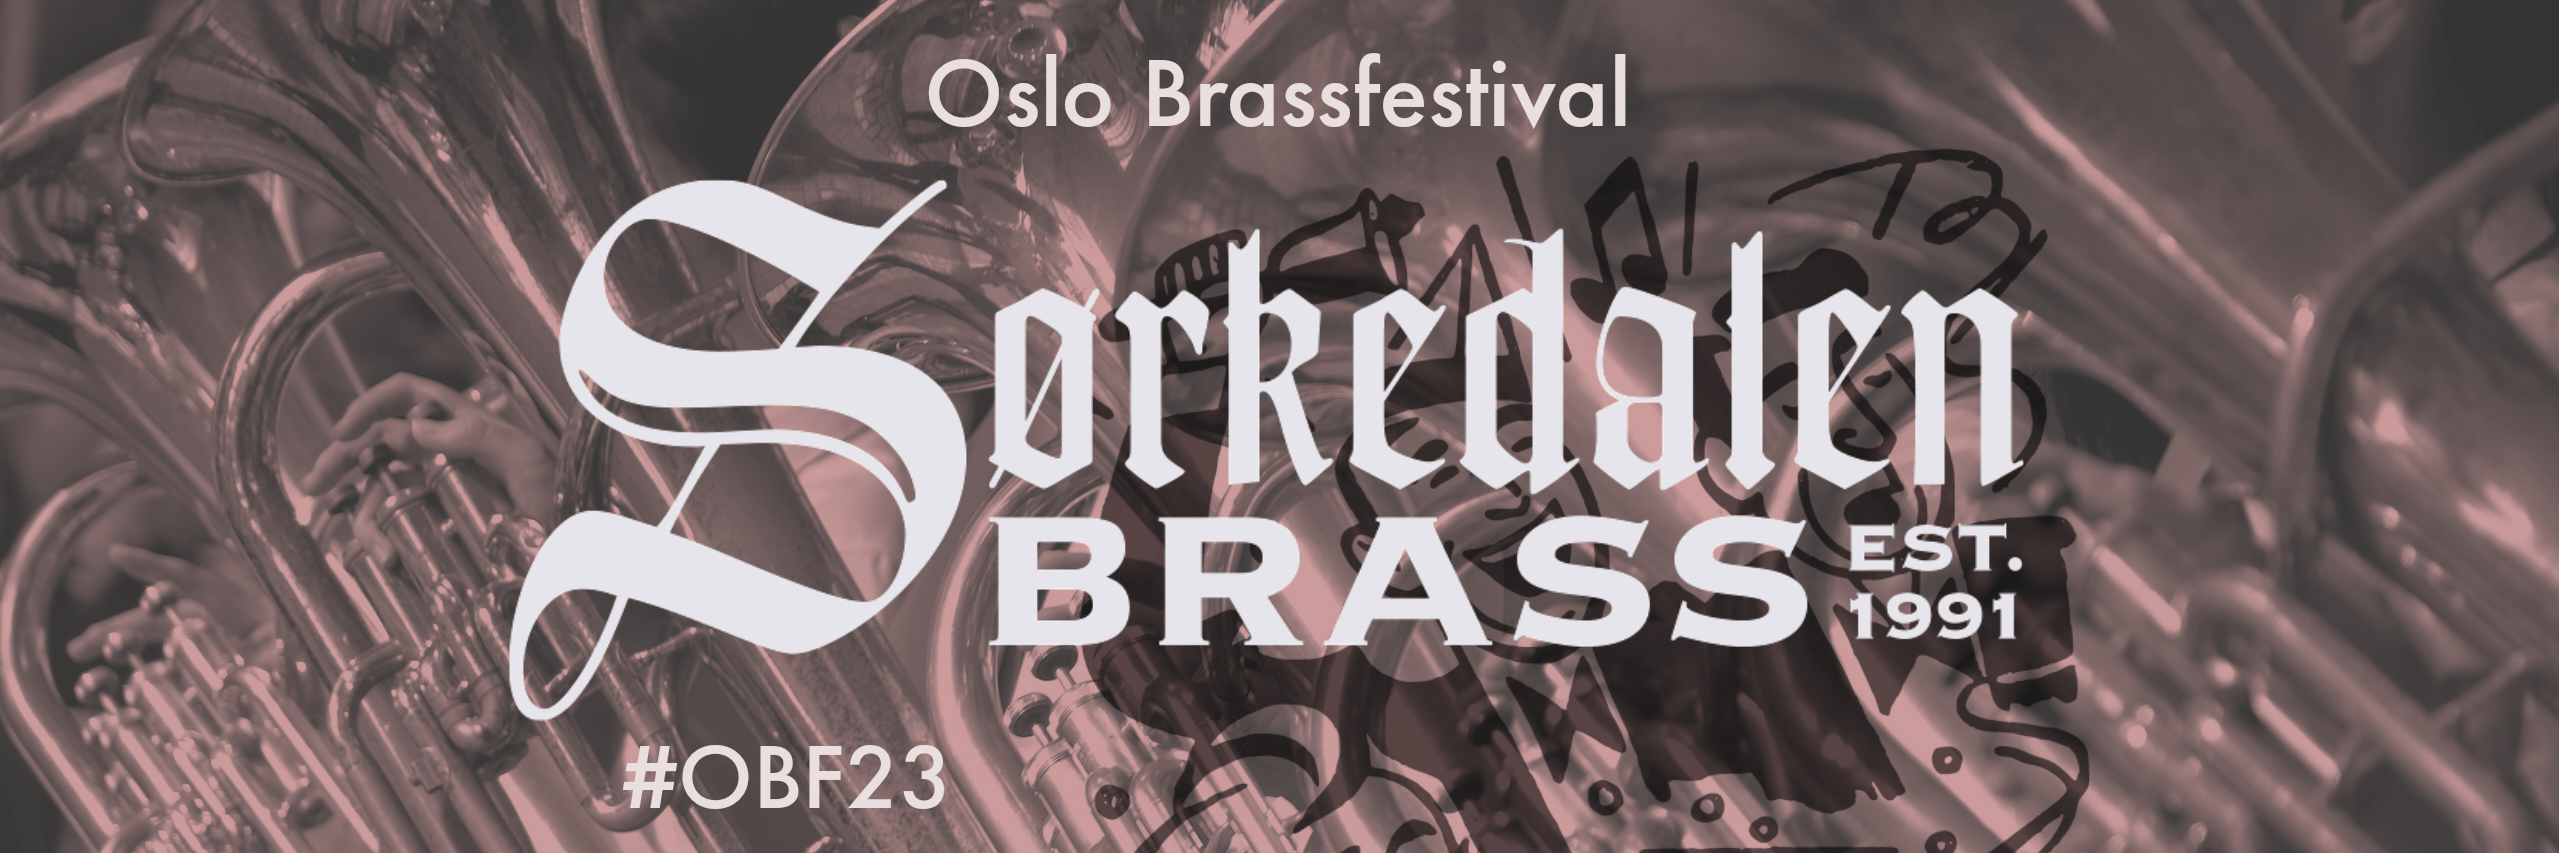 Brassen spiller på Oslo Brassfestival